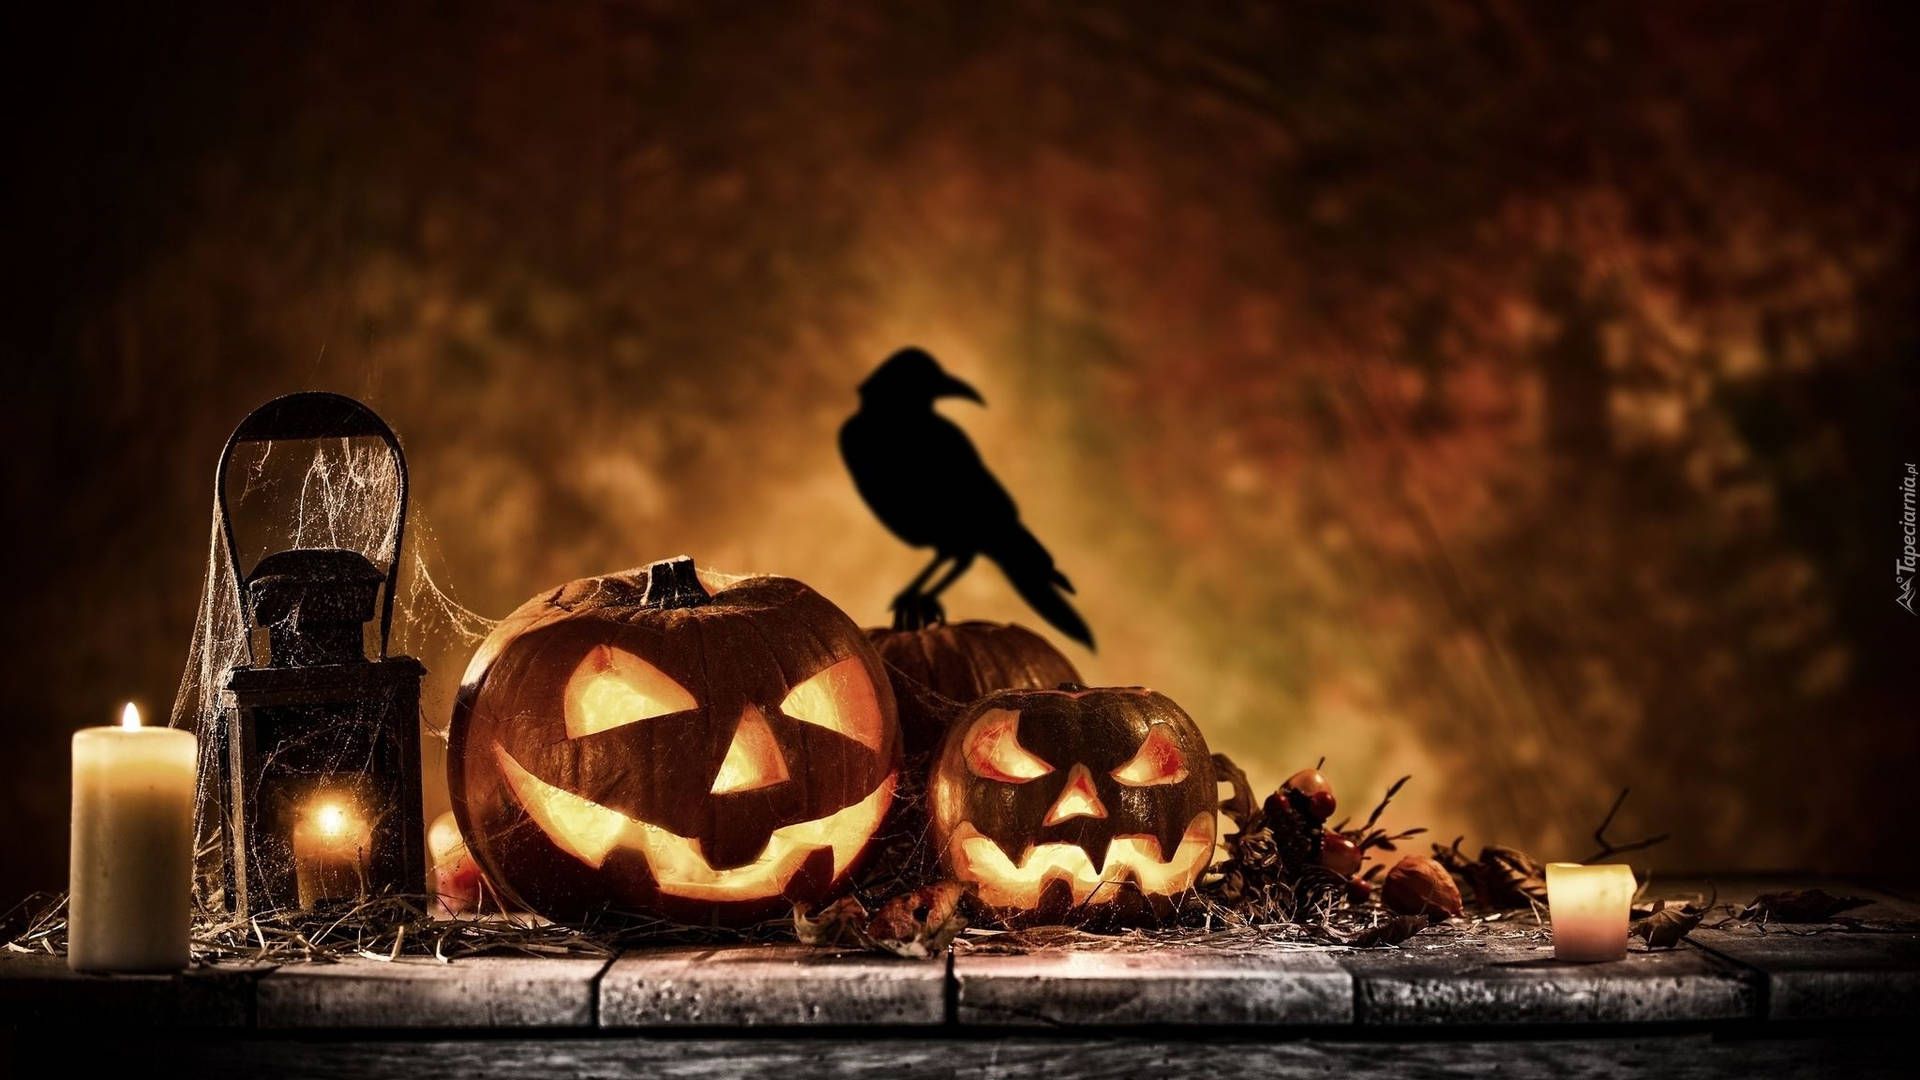 Download Raven On Pumpkin Halloween Aesthetic Wallpaper